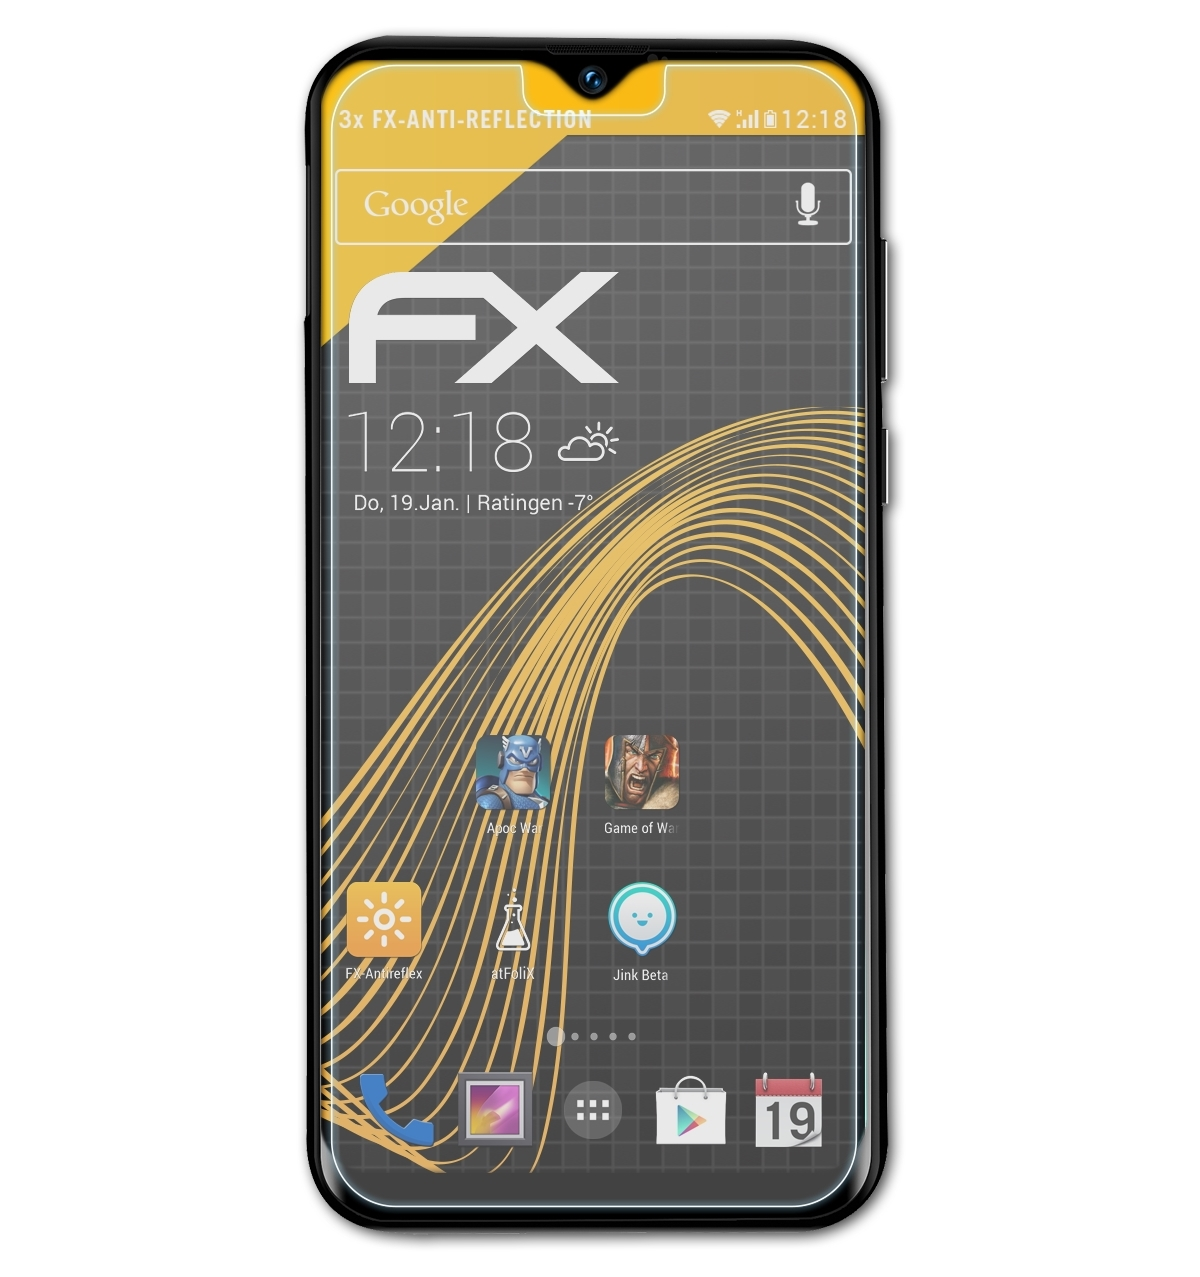 ATFOLIX Y8) 3x FX-Antireflex Doogee Displayschutz(für